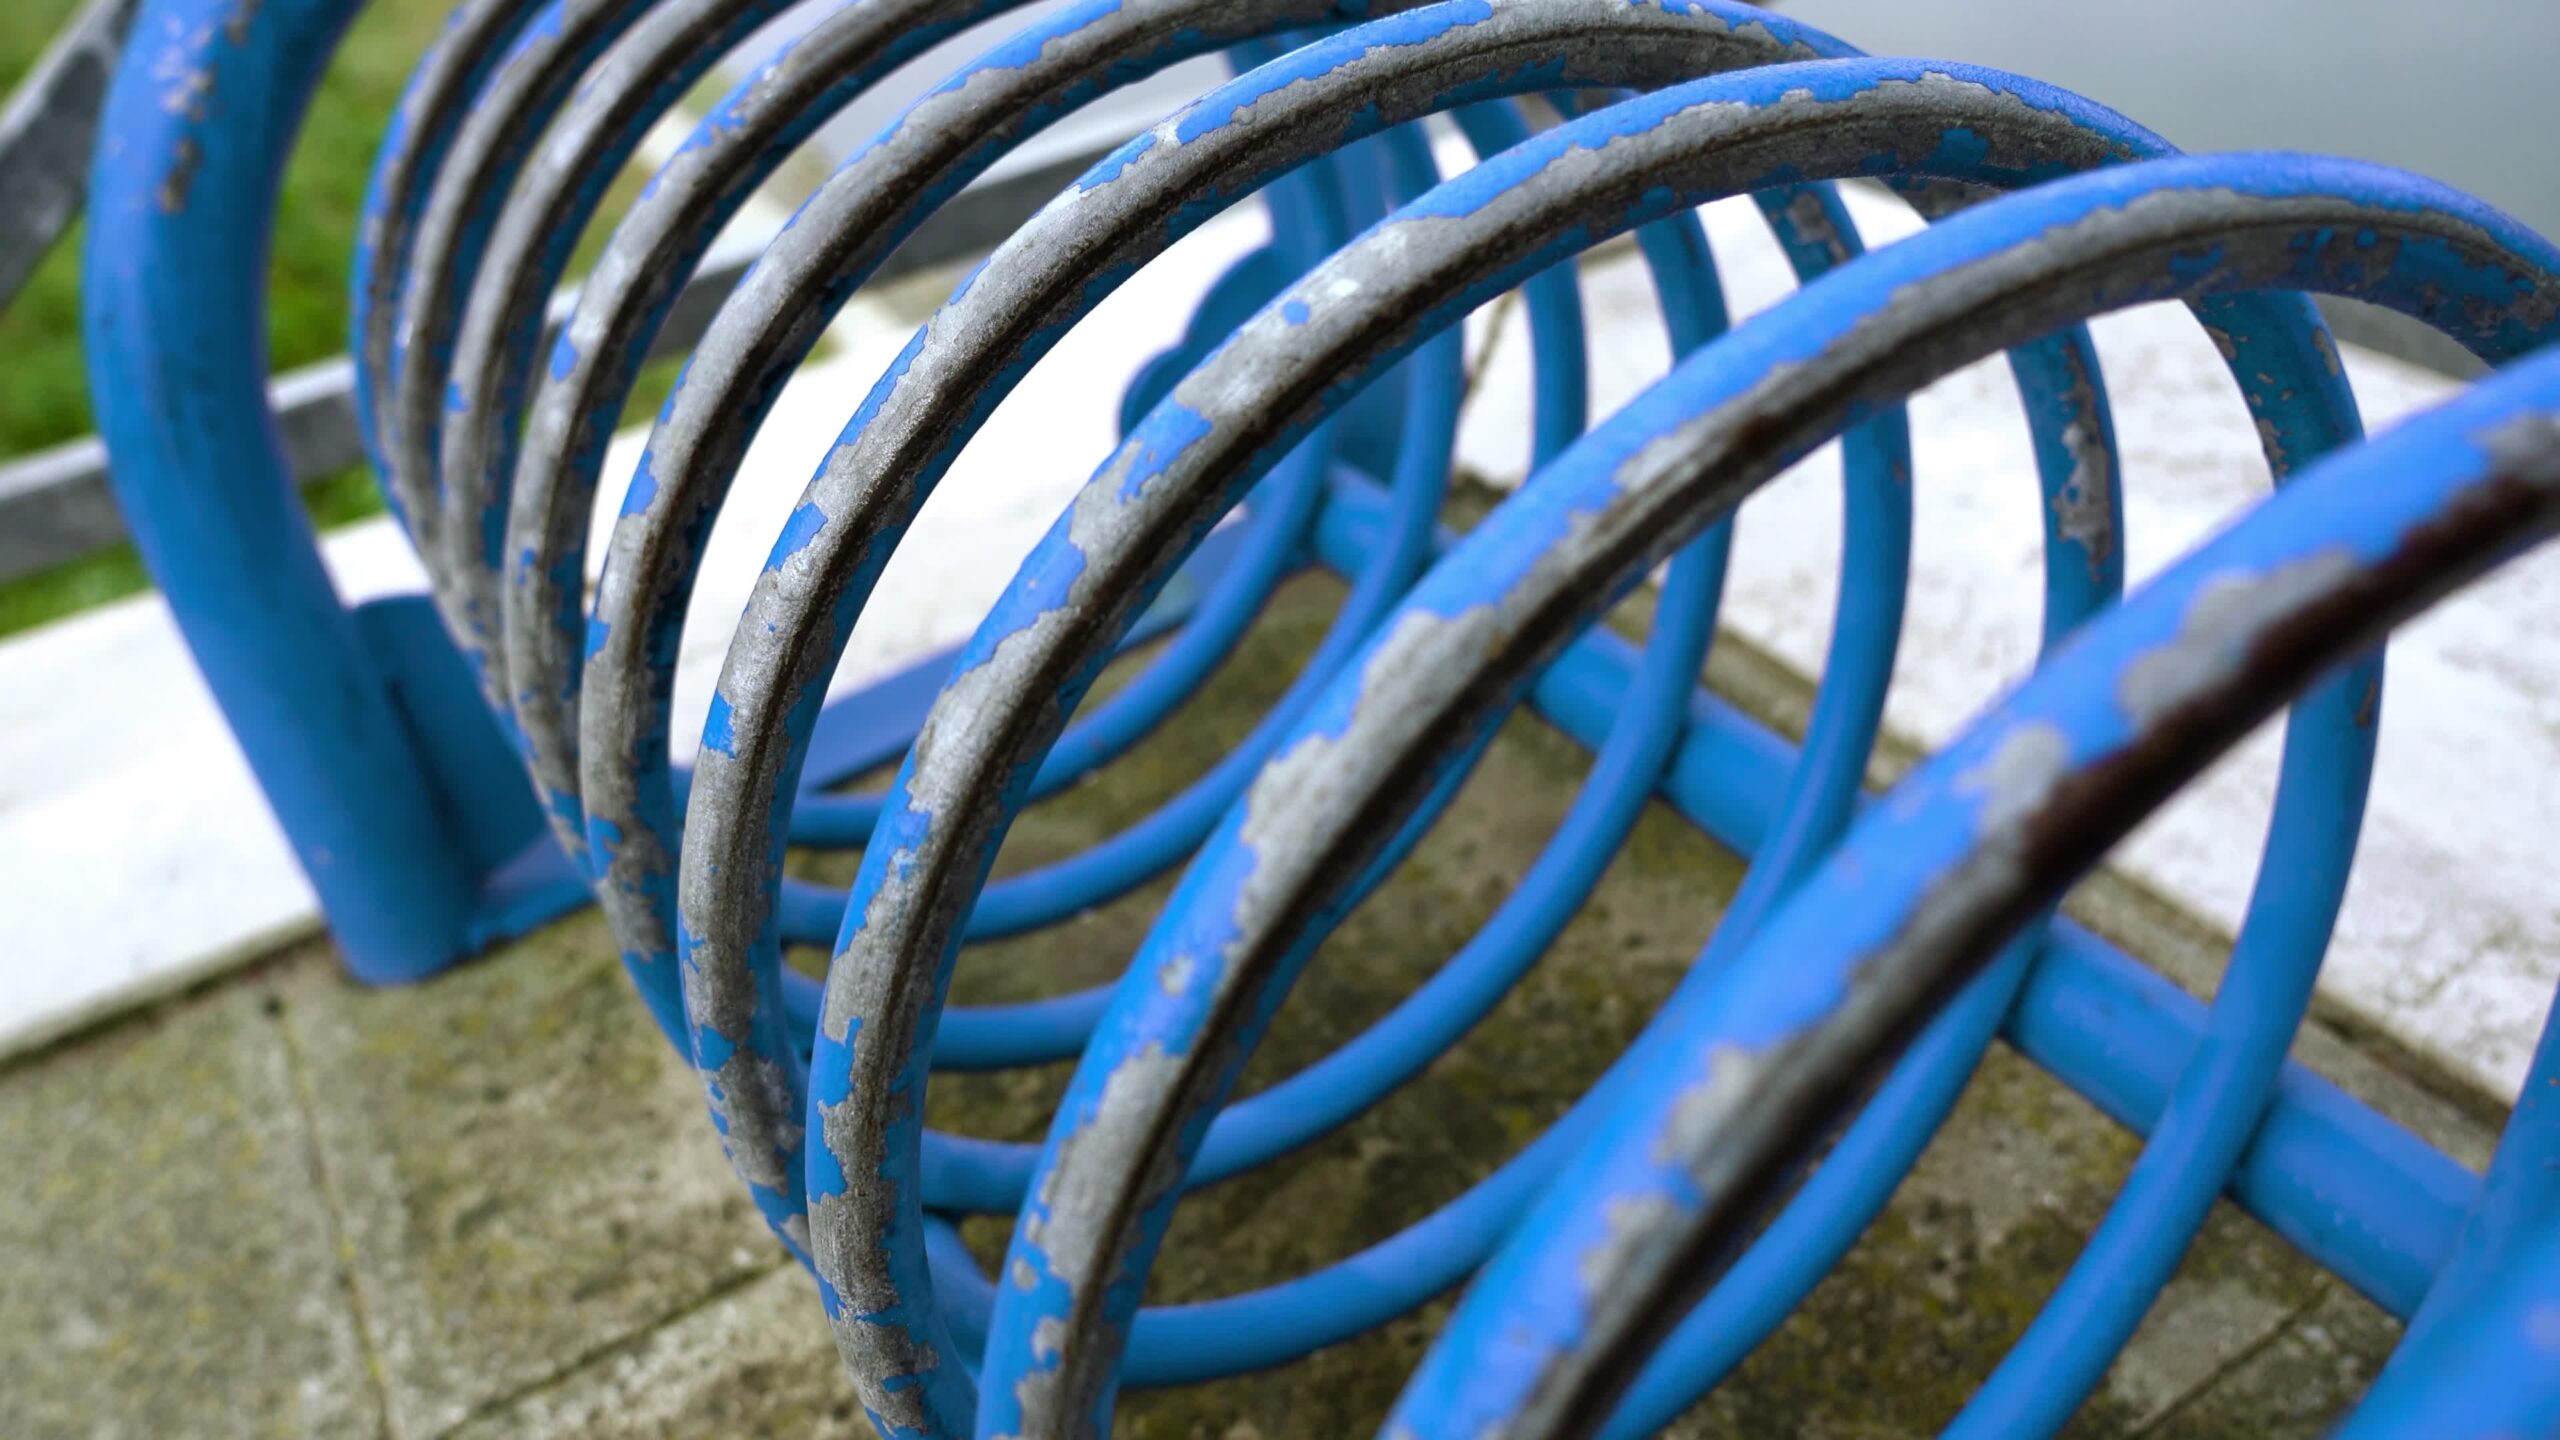 Movimento su un parcheggio per biciclette squallido blu brillante a forma di anello